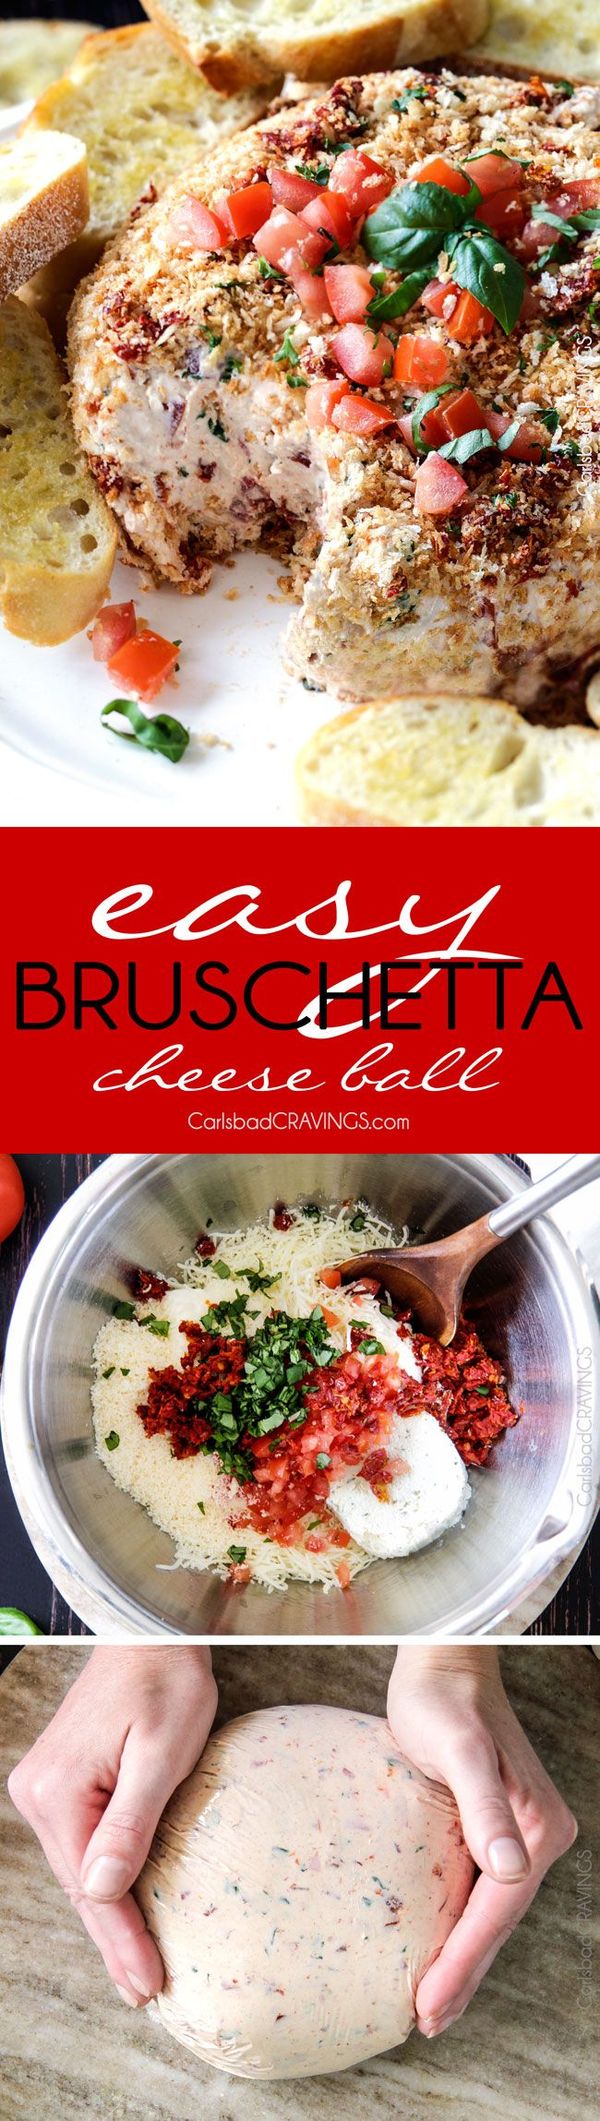 Bruschetta Cheese Ball